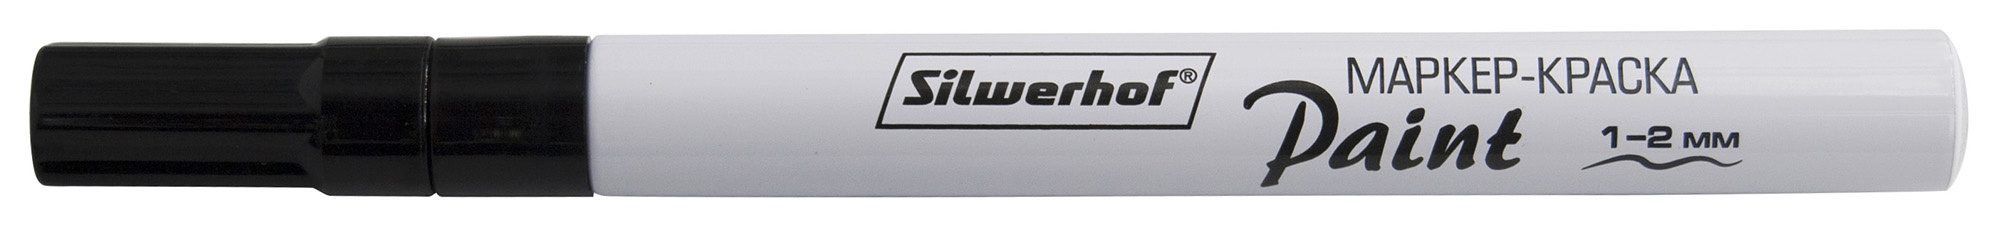 Маркер лаковый Silwerhof Paint пулевидный пиш. наконечник 1-2мм металический корпус черный